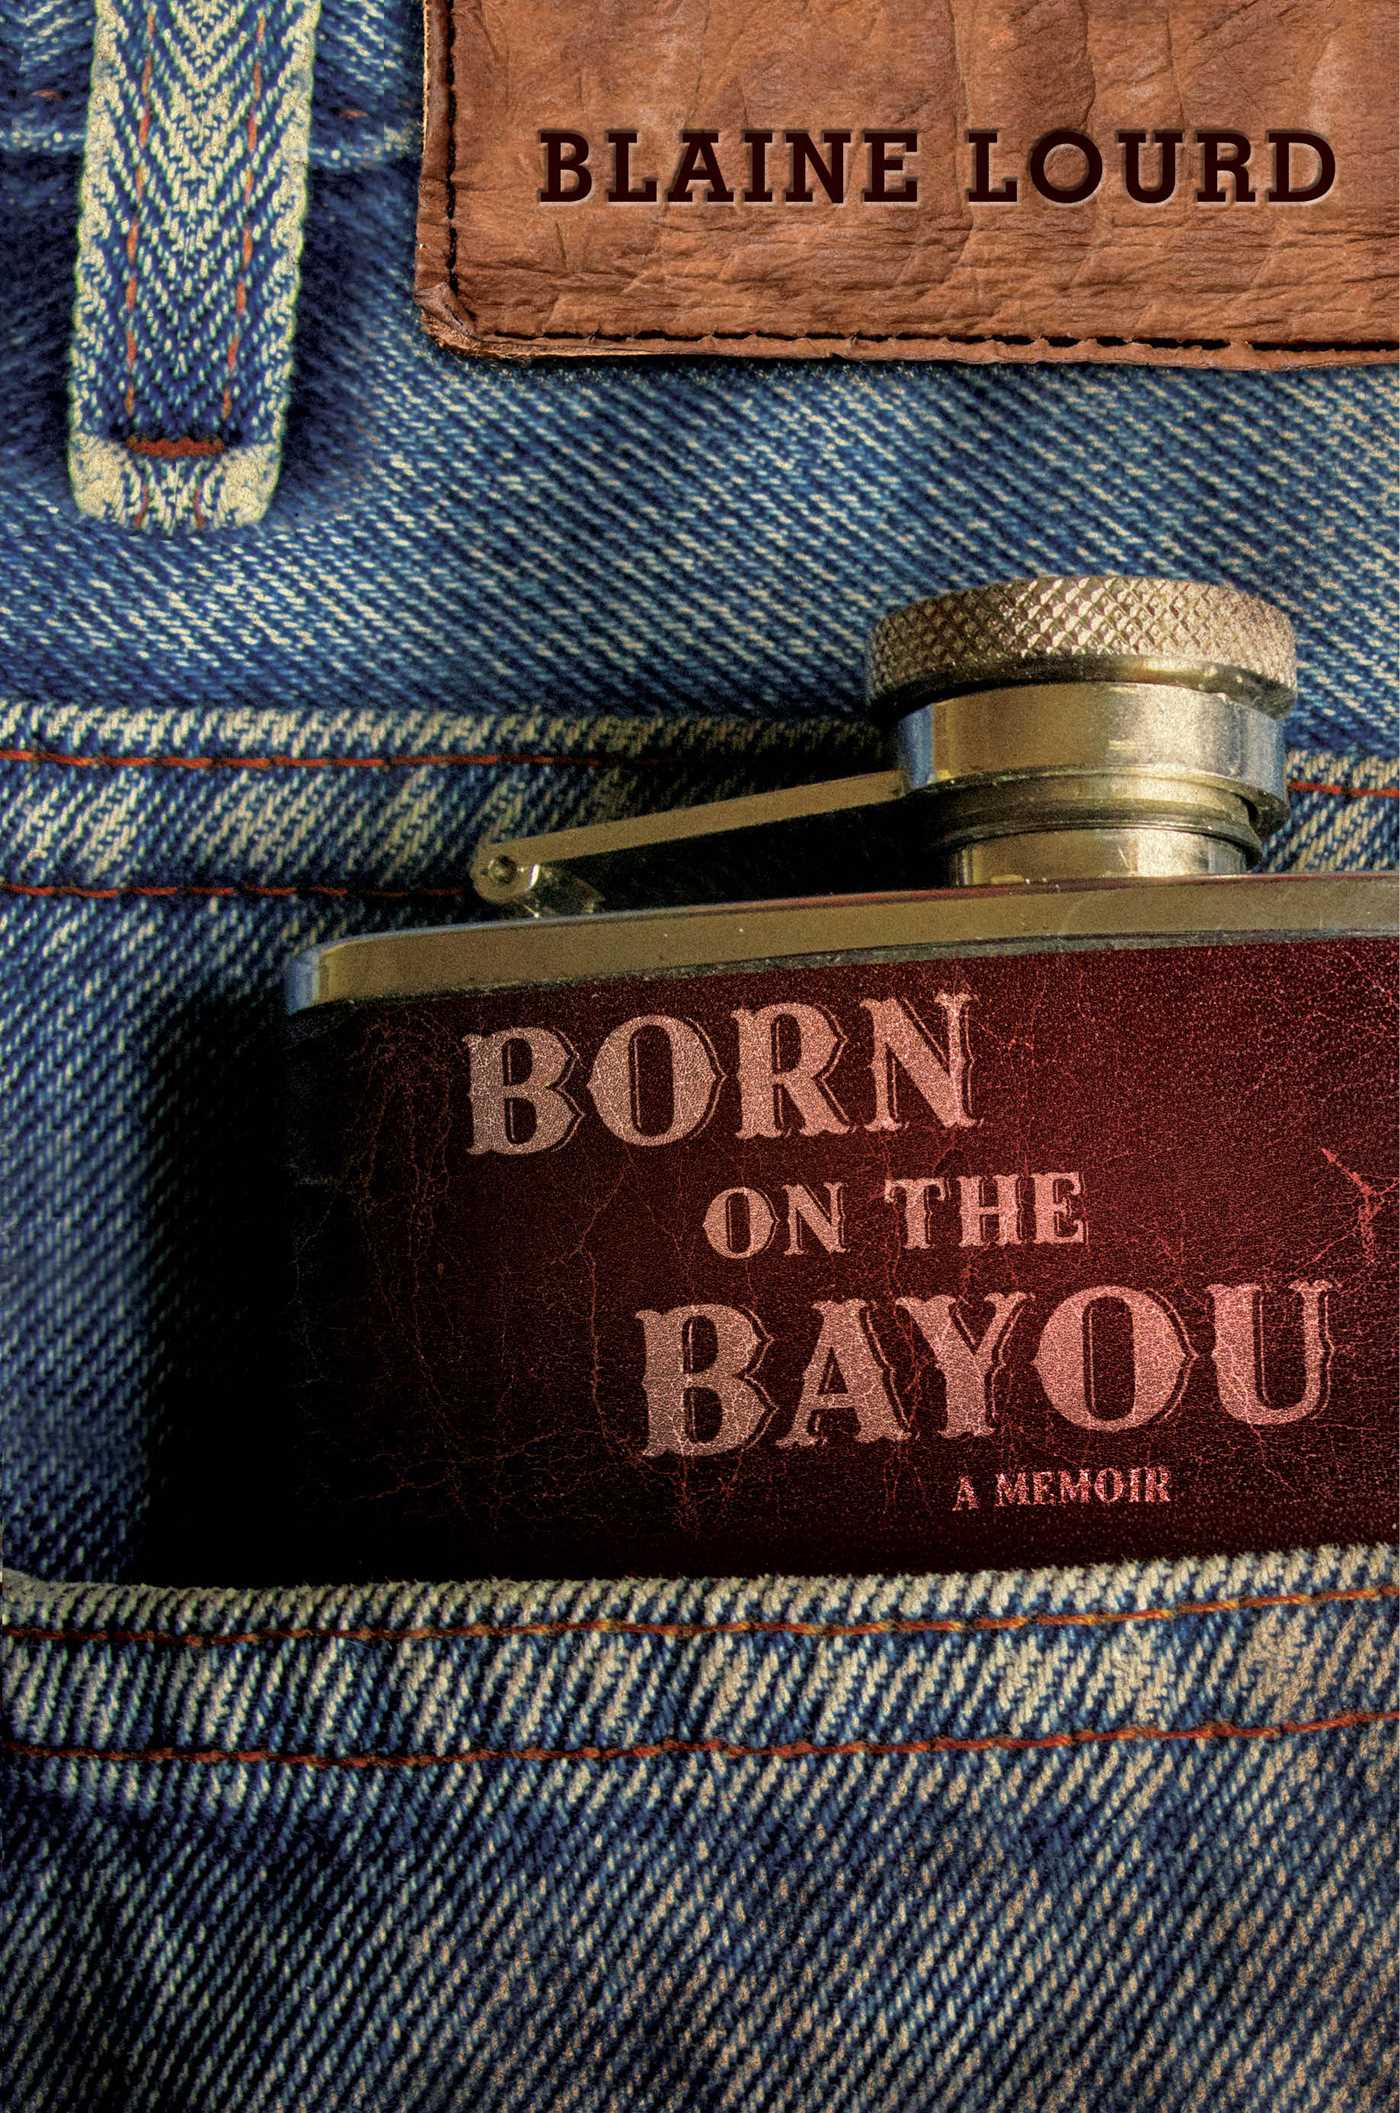 Born on the Bayou